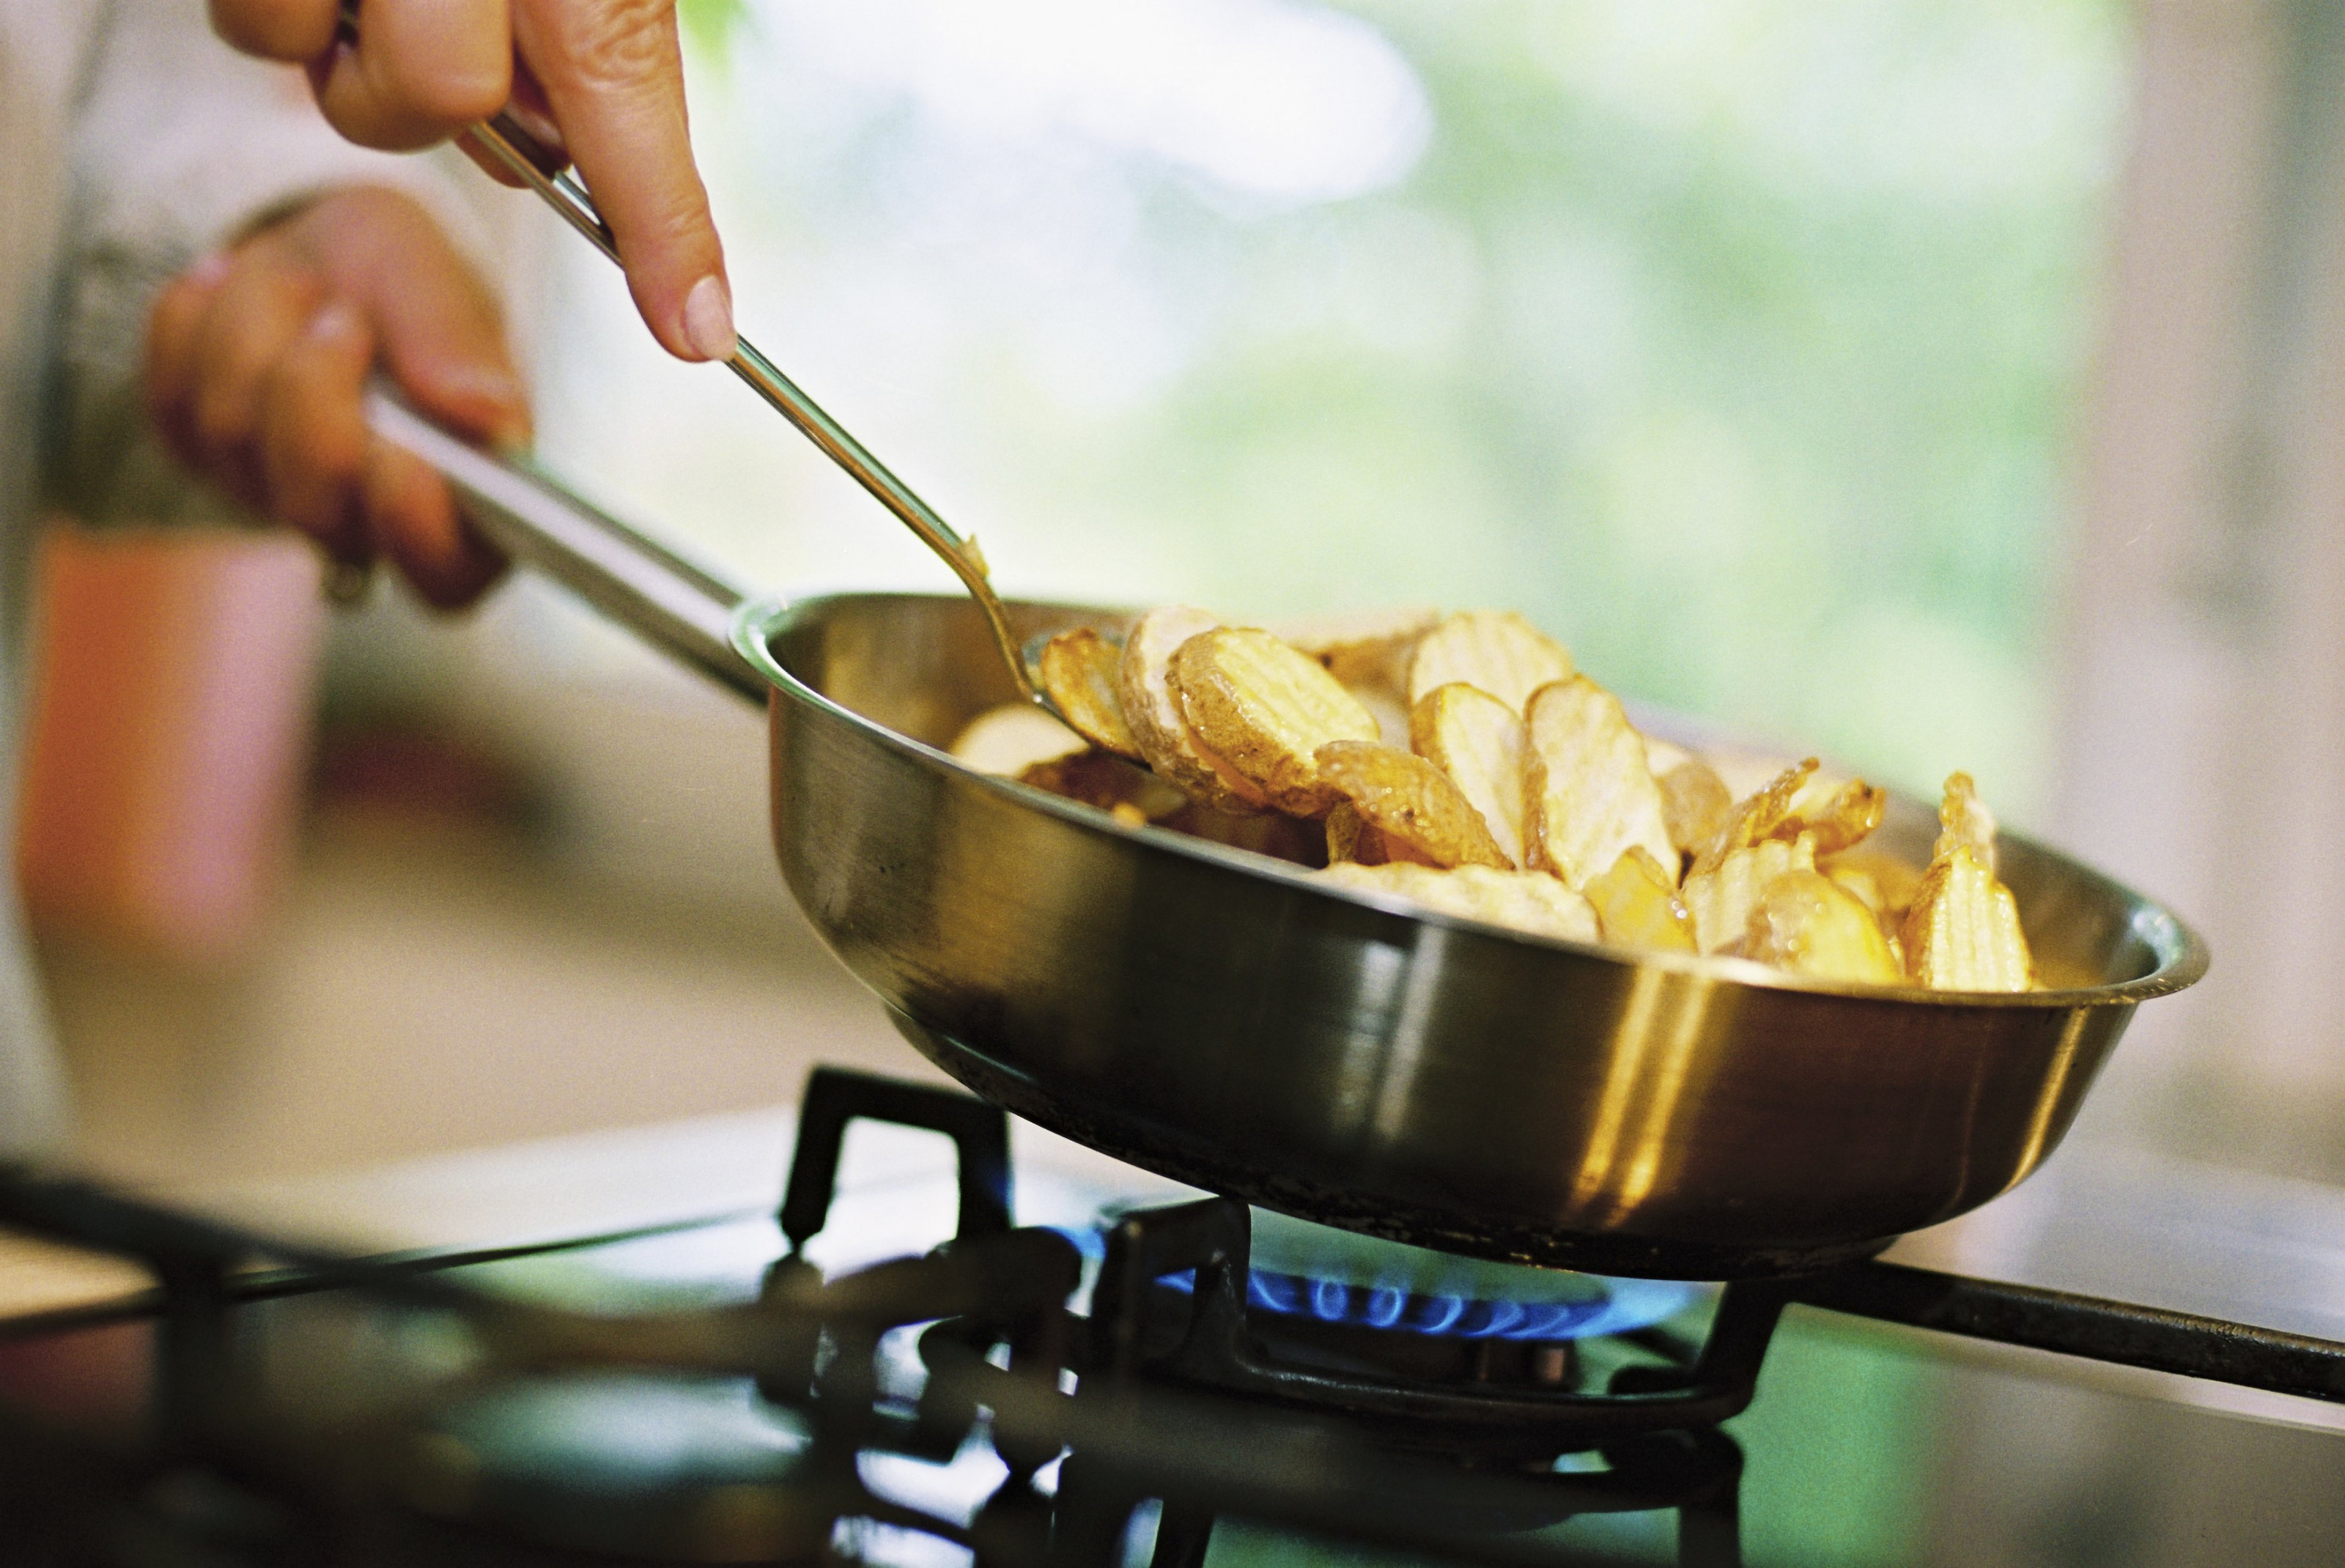 Почему после жареной. Термическая обработка пищи. Процесс приготовления пищи. Сковородка с картошкой на плите. Еда жариться на сковородке.